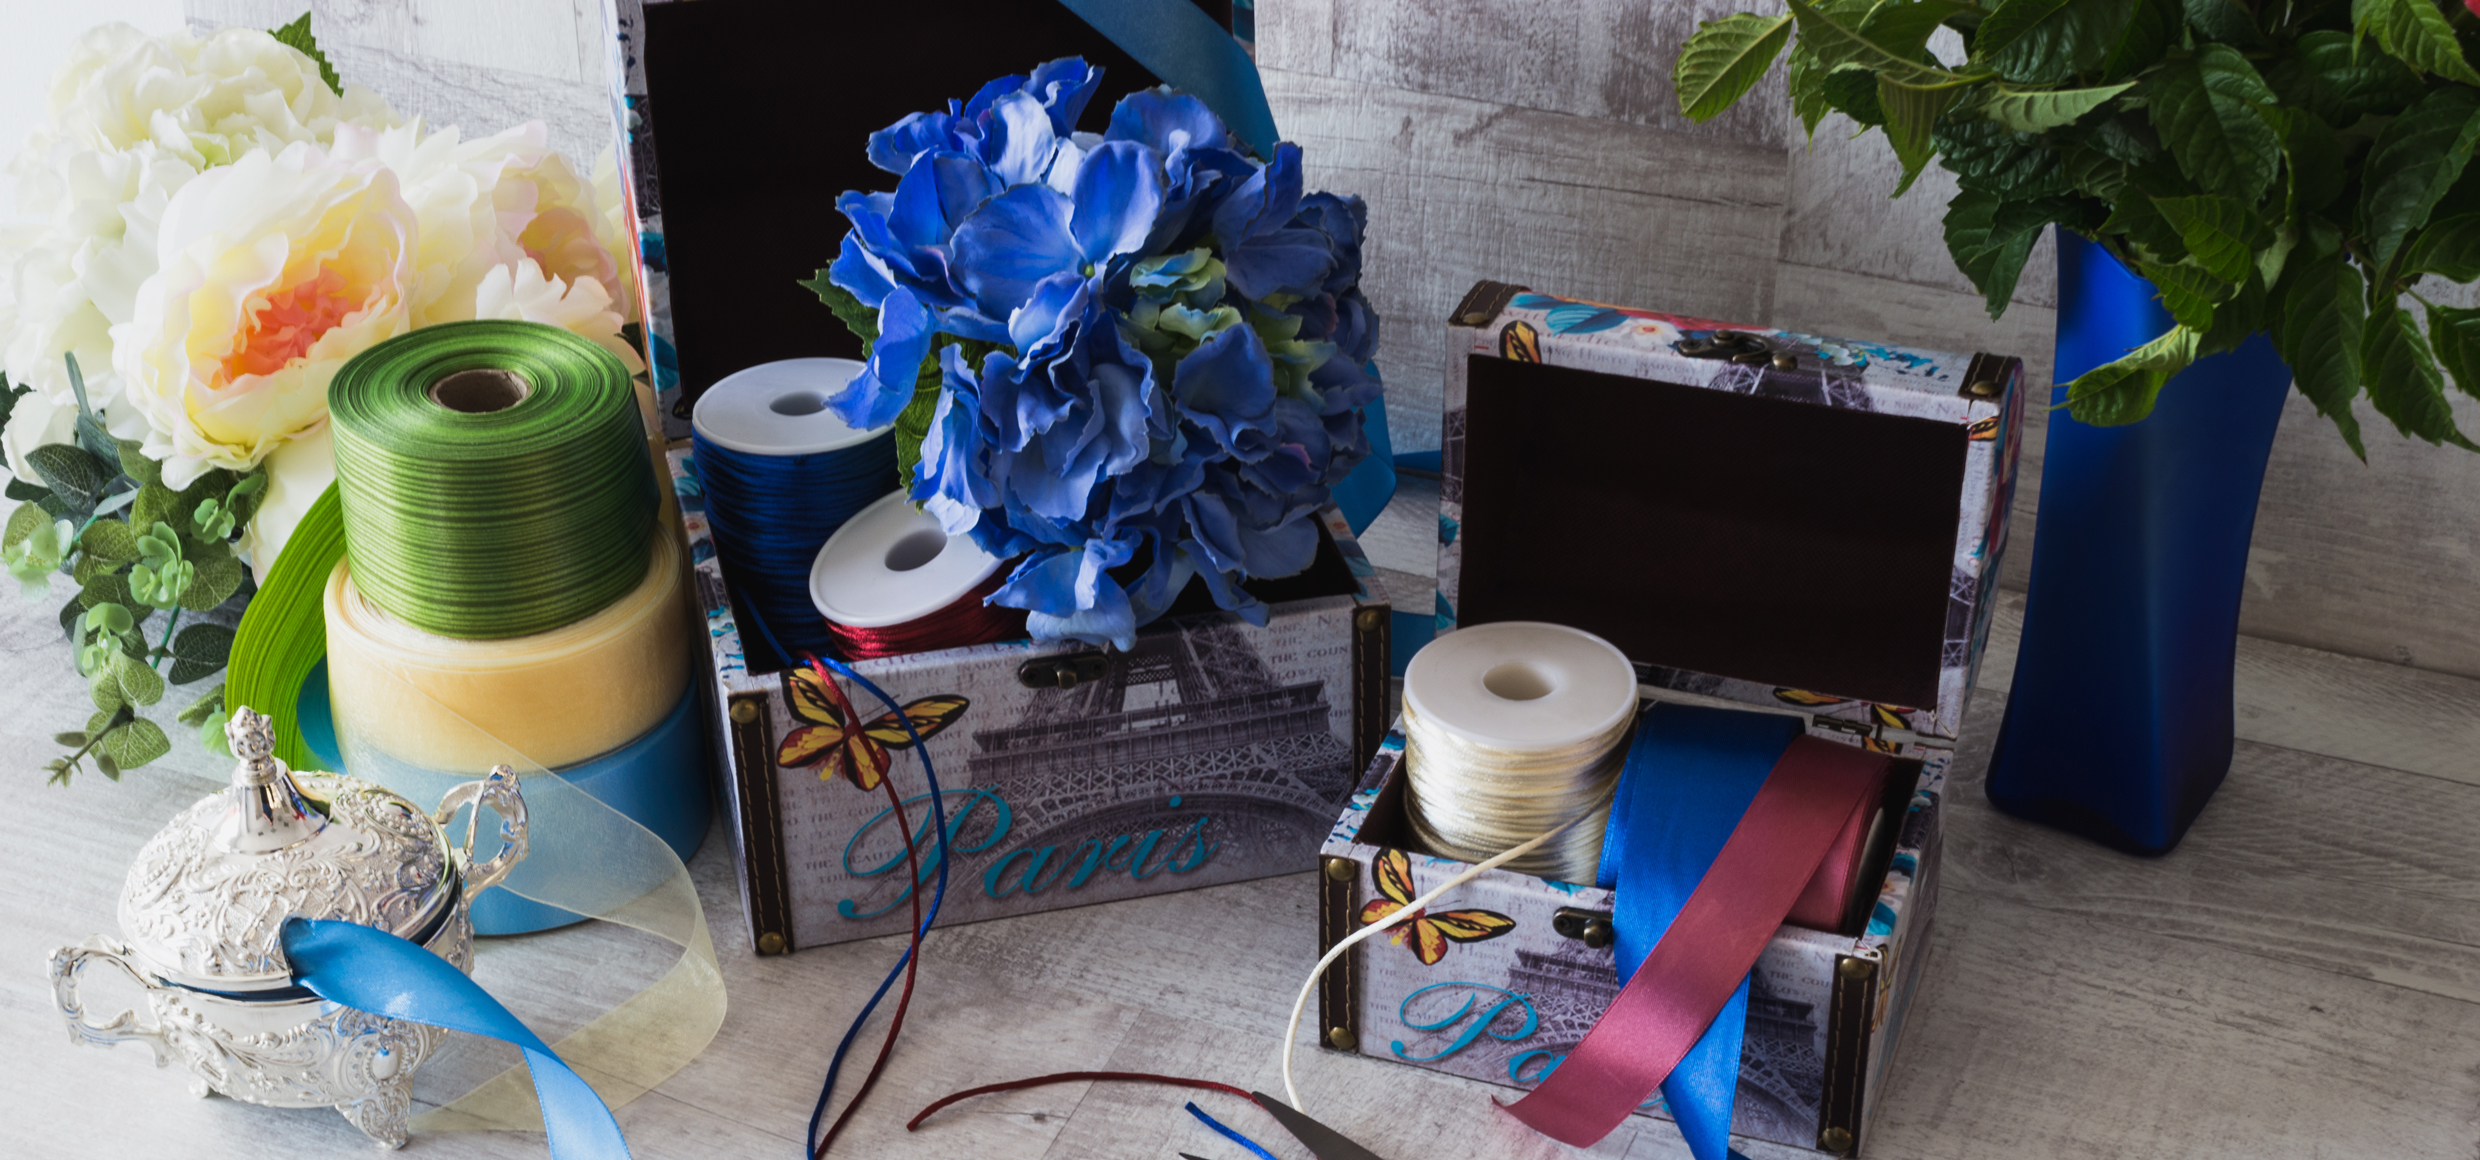 scena dintr-un atelier de arnjamente florale infatisand flori artificiale, doua cutii decorative, snururi si panglici colorate